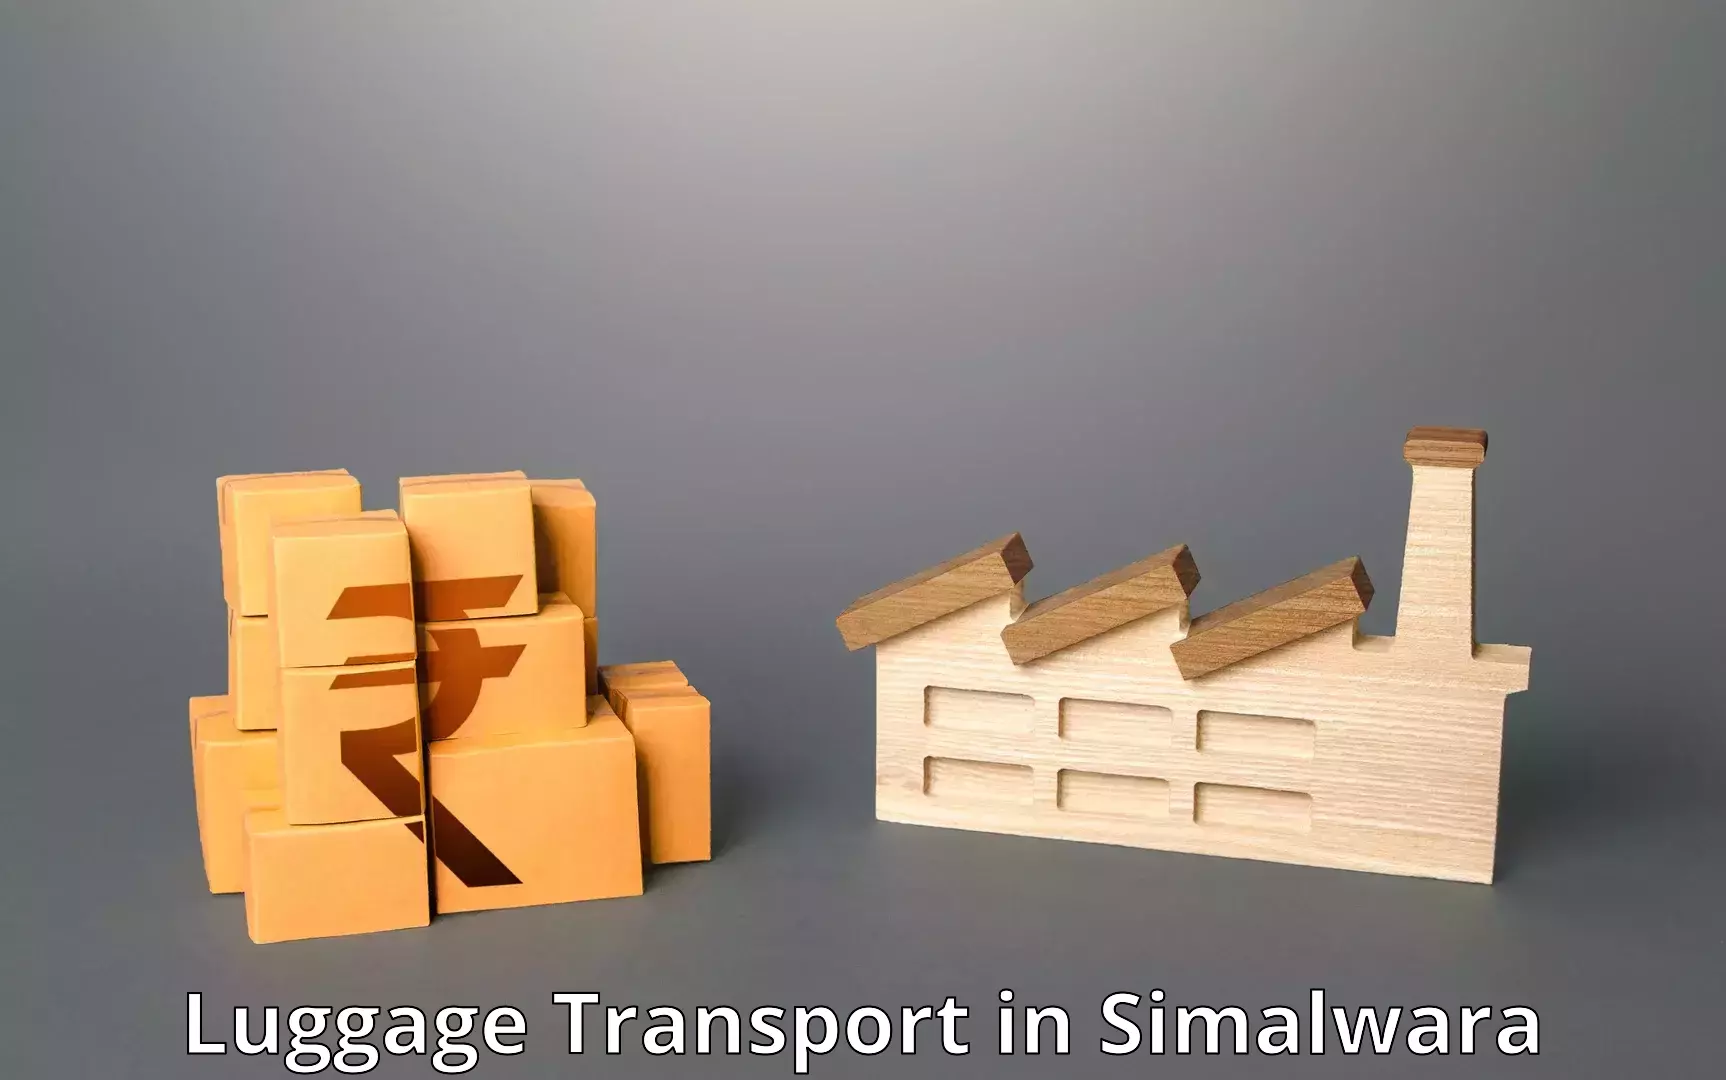 Luggage transport rates in Simalwara